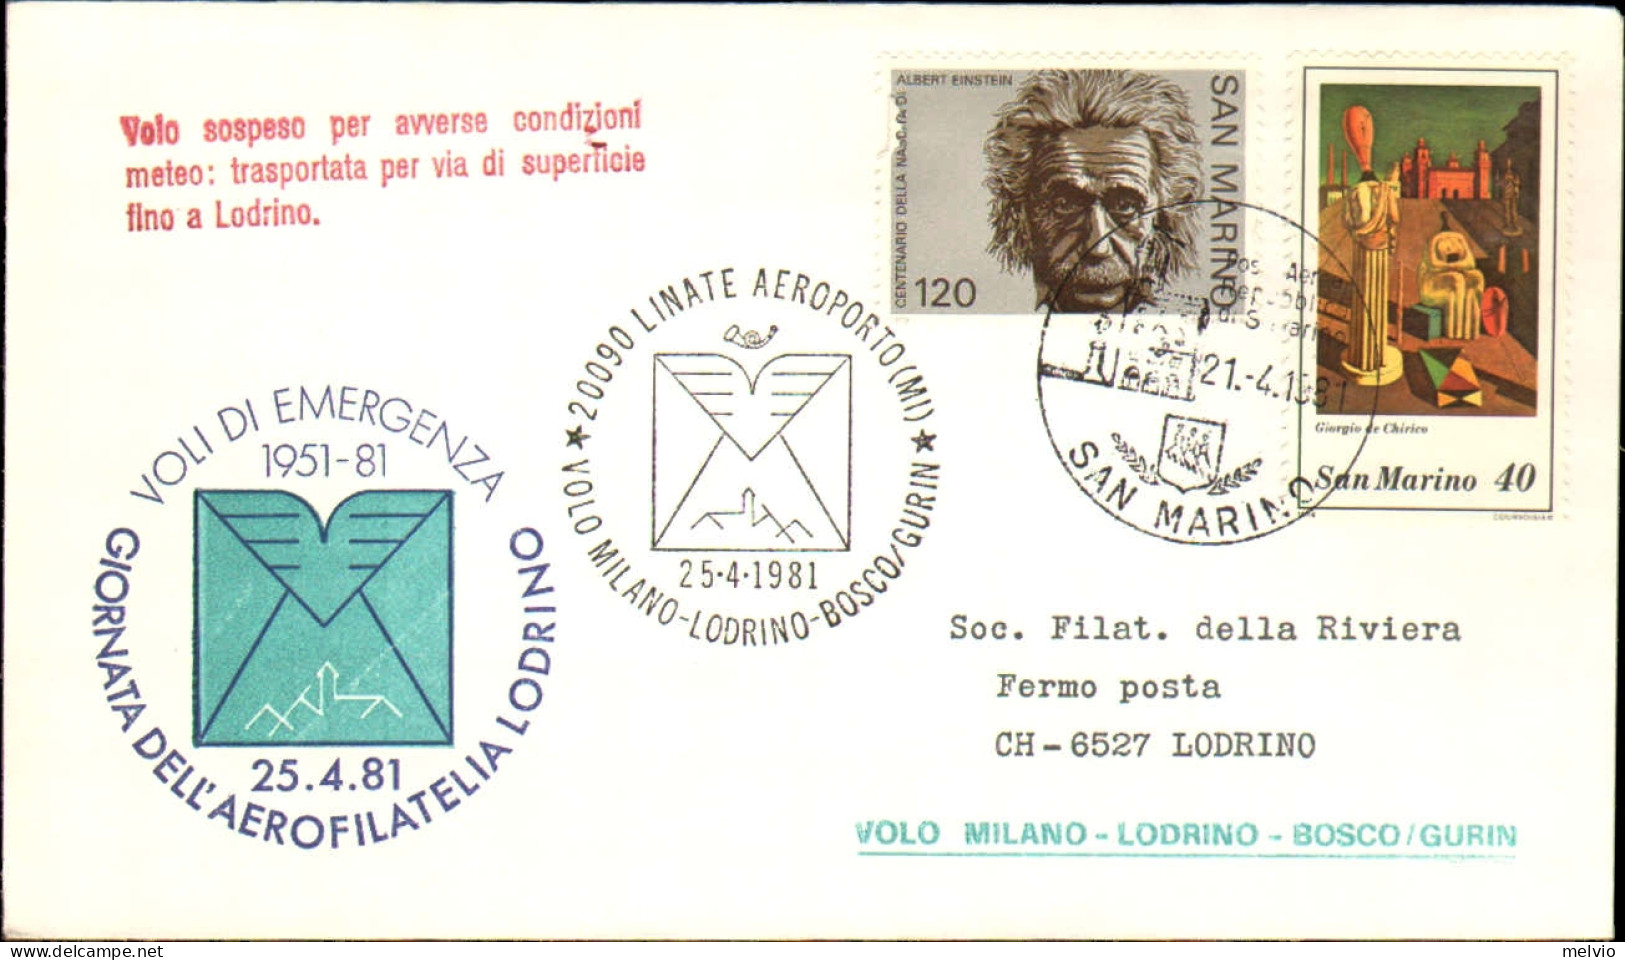 San Marino-1981 Volo Milano-Lodrino-Bosco/Gurin - Airmail